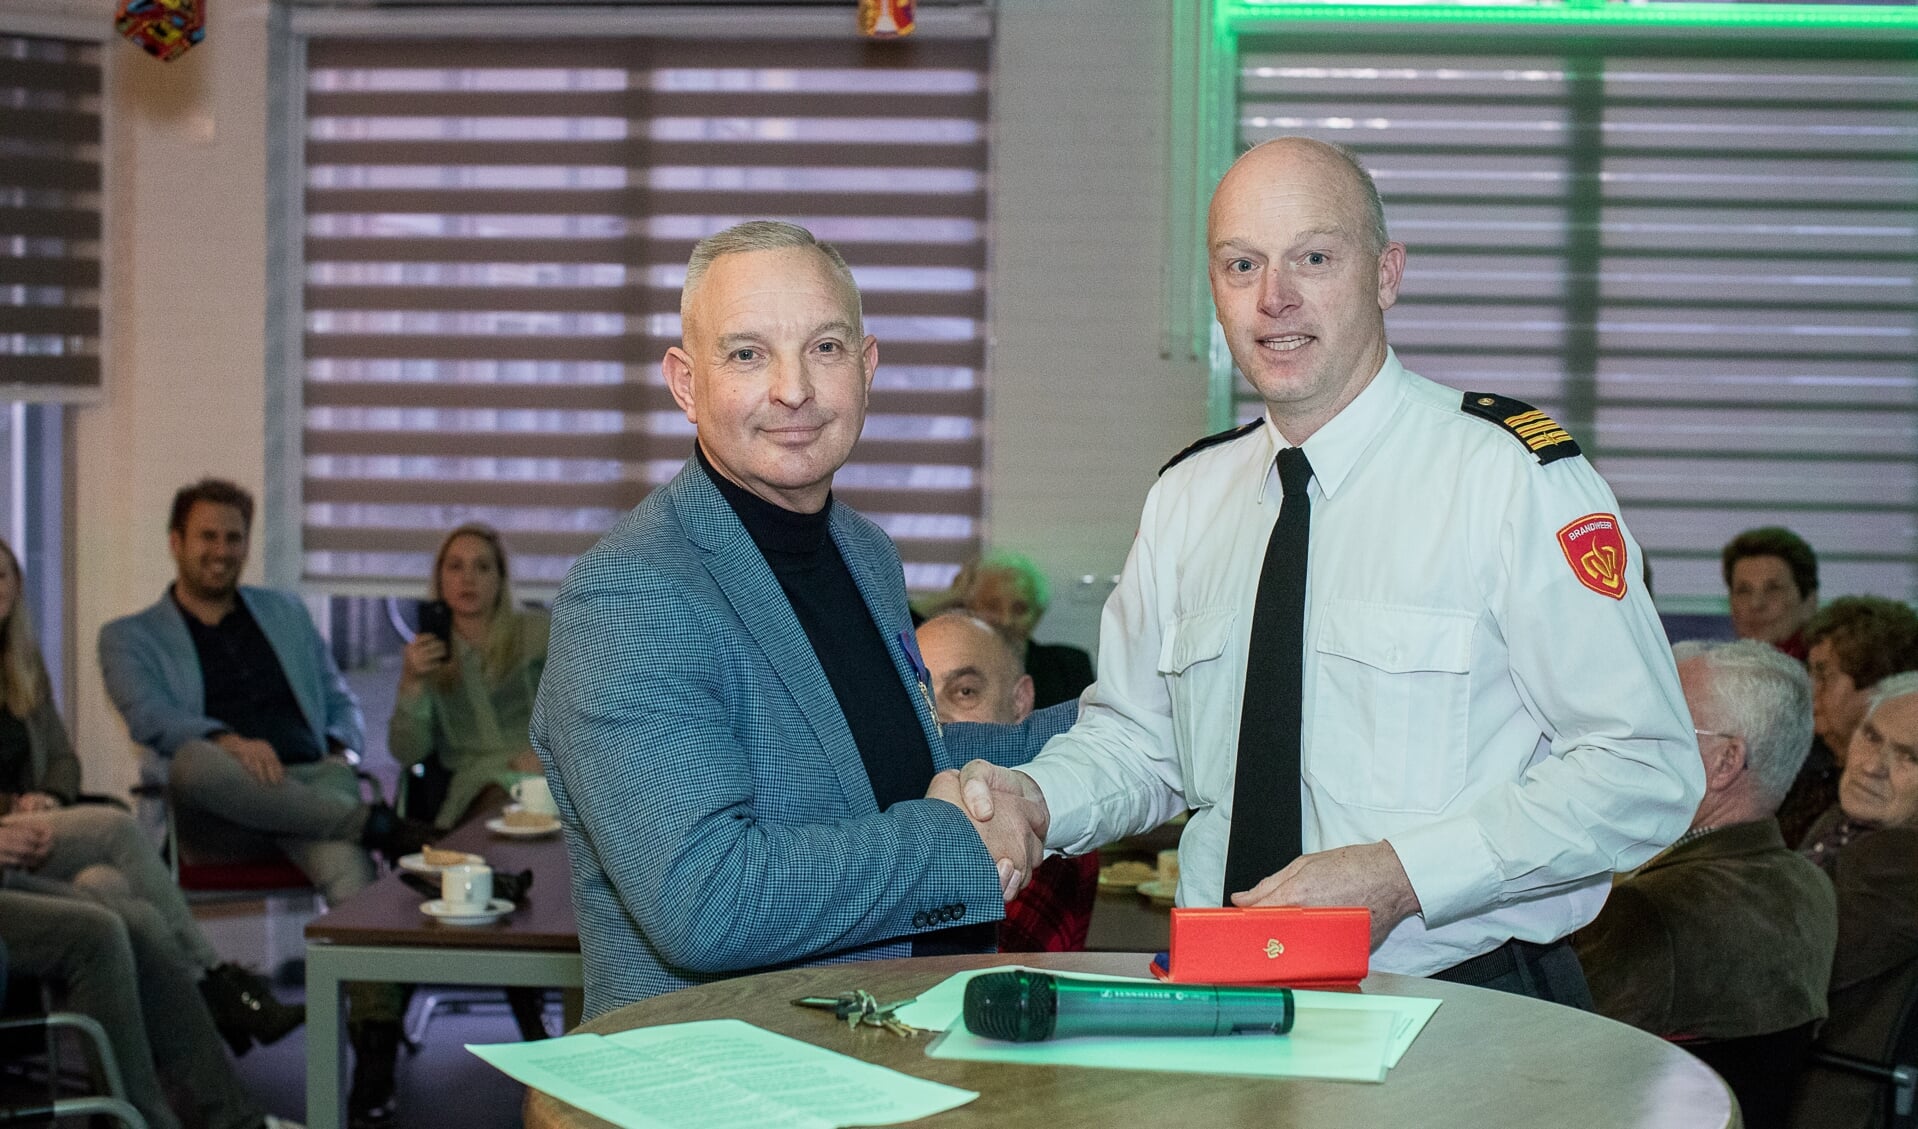 Brandweerman Steven van de Craats nam vorige week officieel afscheid in de kantine van de brandweerkazerne, waar hij een medaille ontving als dank voor veertig jaar inzet.